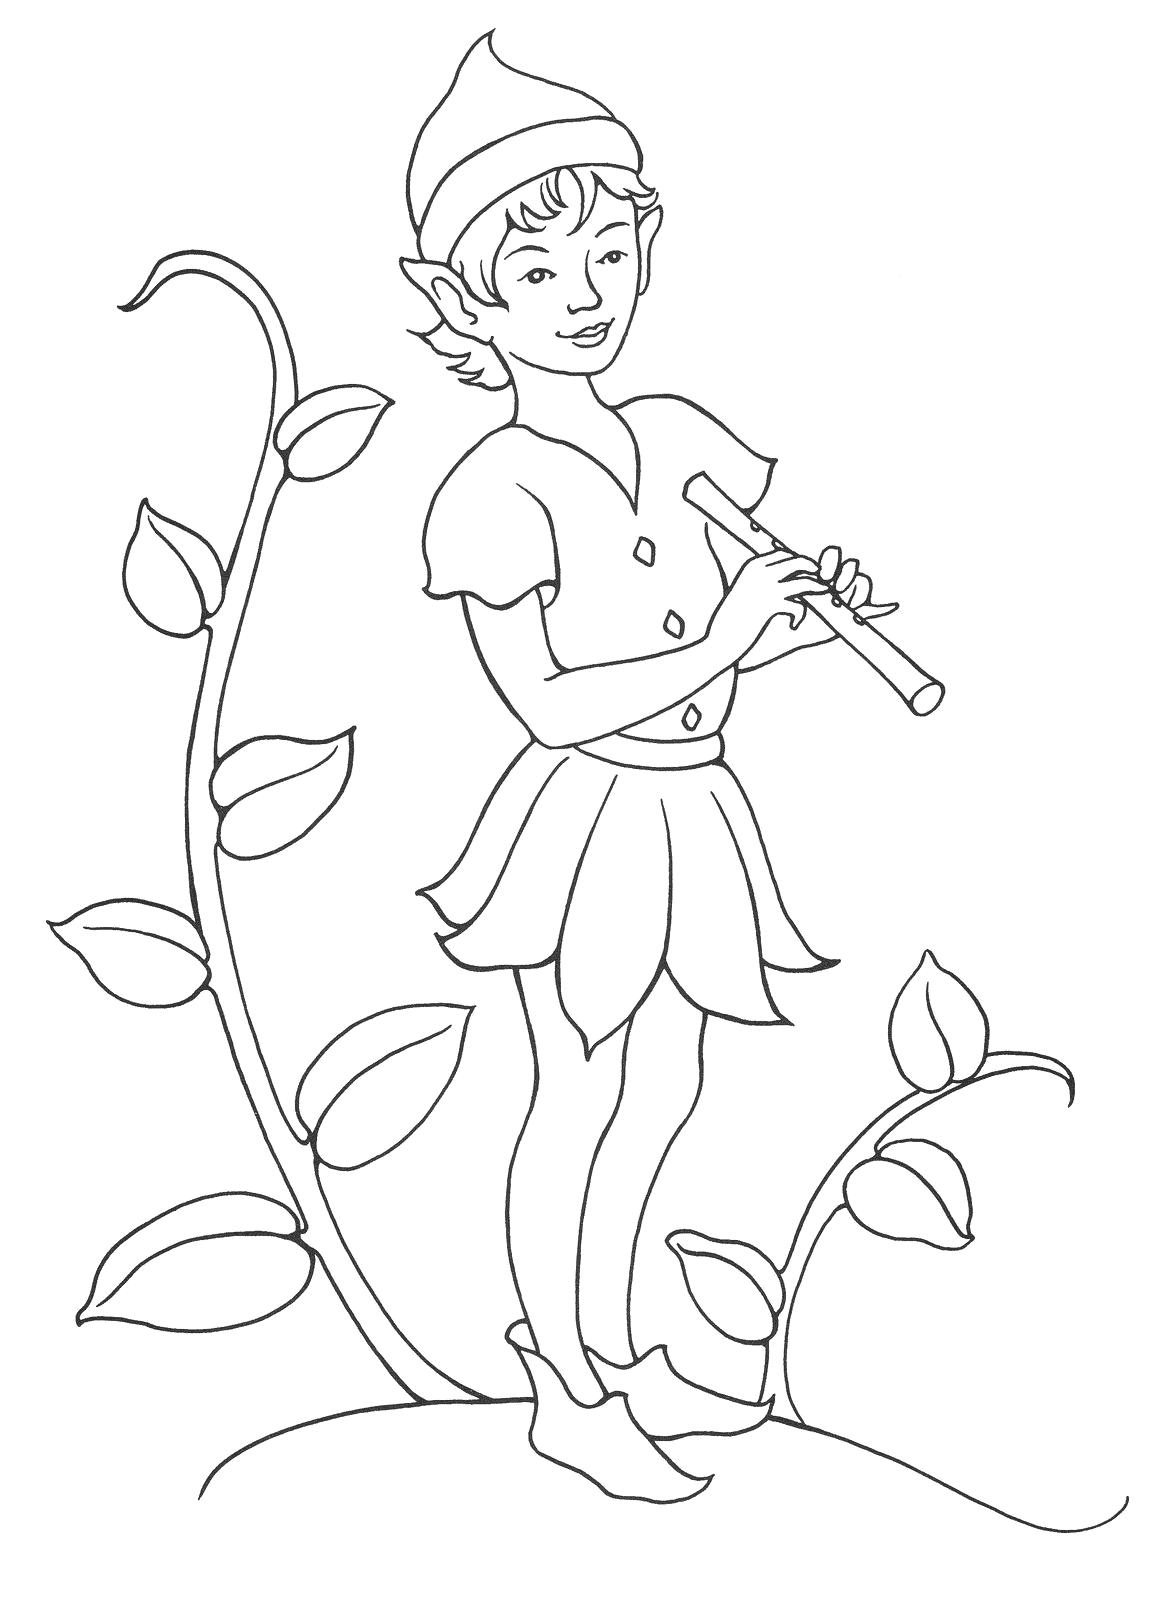 Coloring page Boy Elf musician